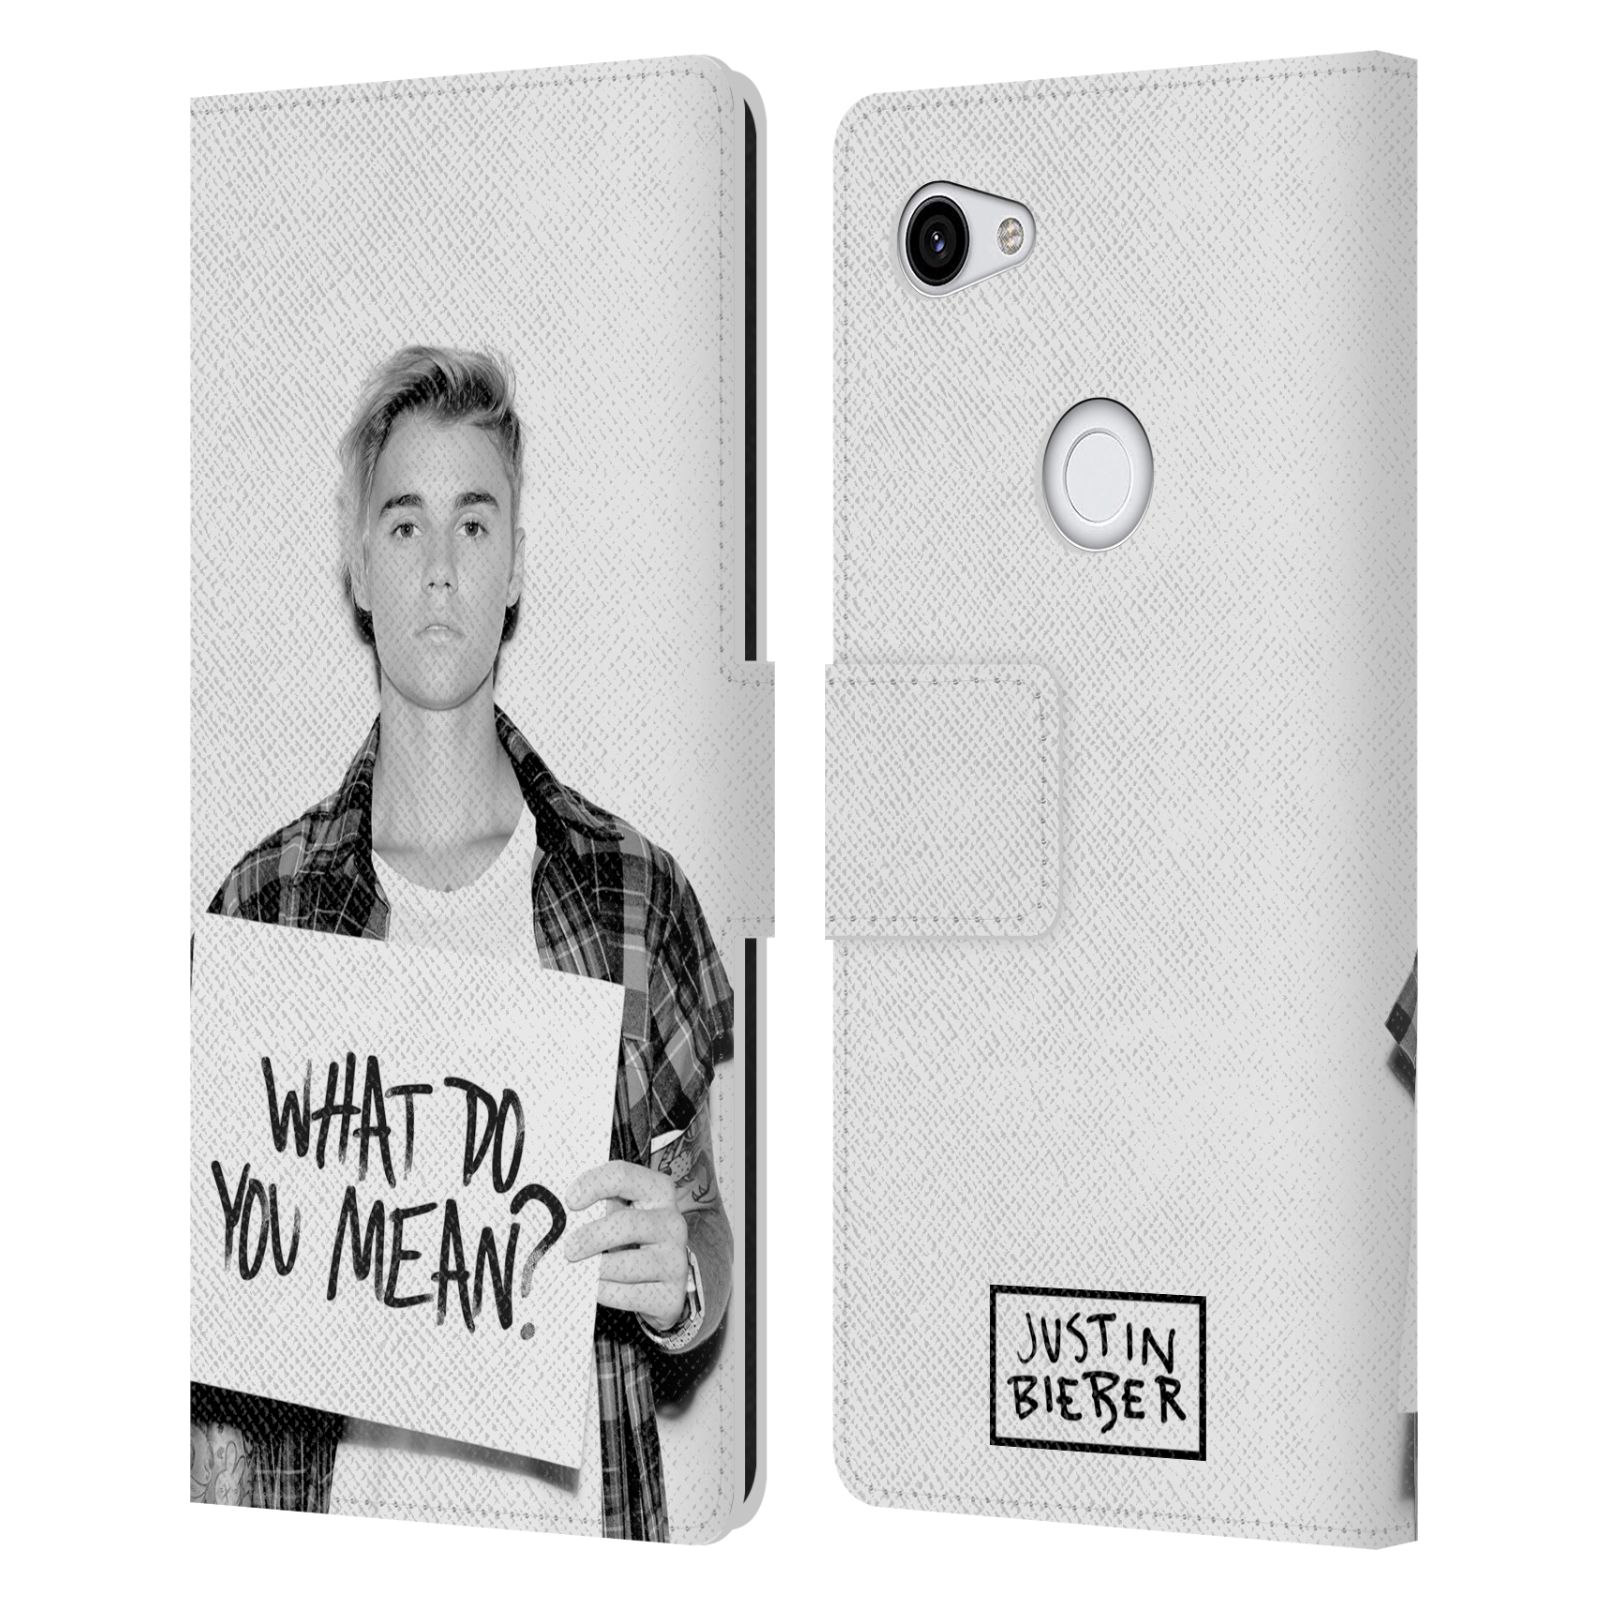 Pouzdro na mobil Google Pixel 3a XL - Head Case - Justin Bieber - Foto What Do You Mean